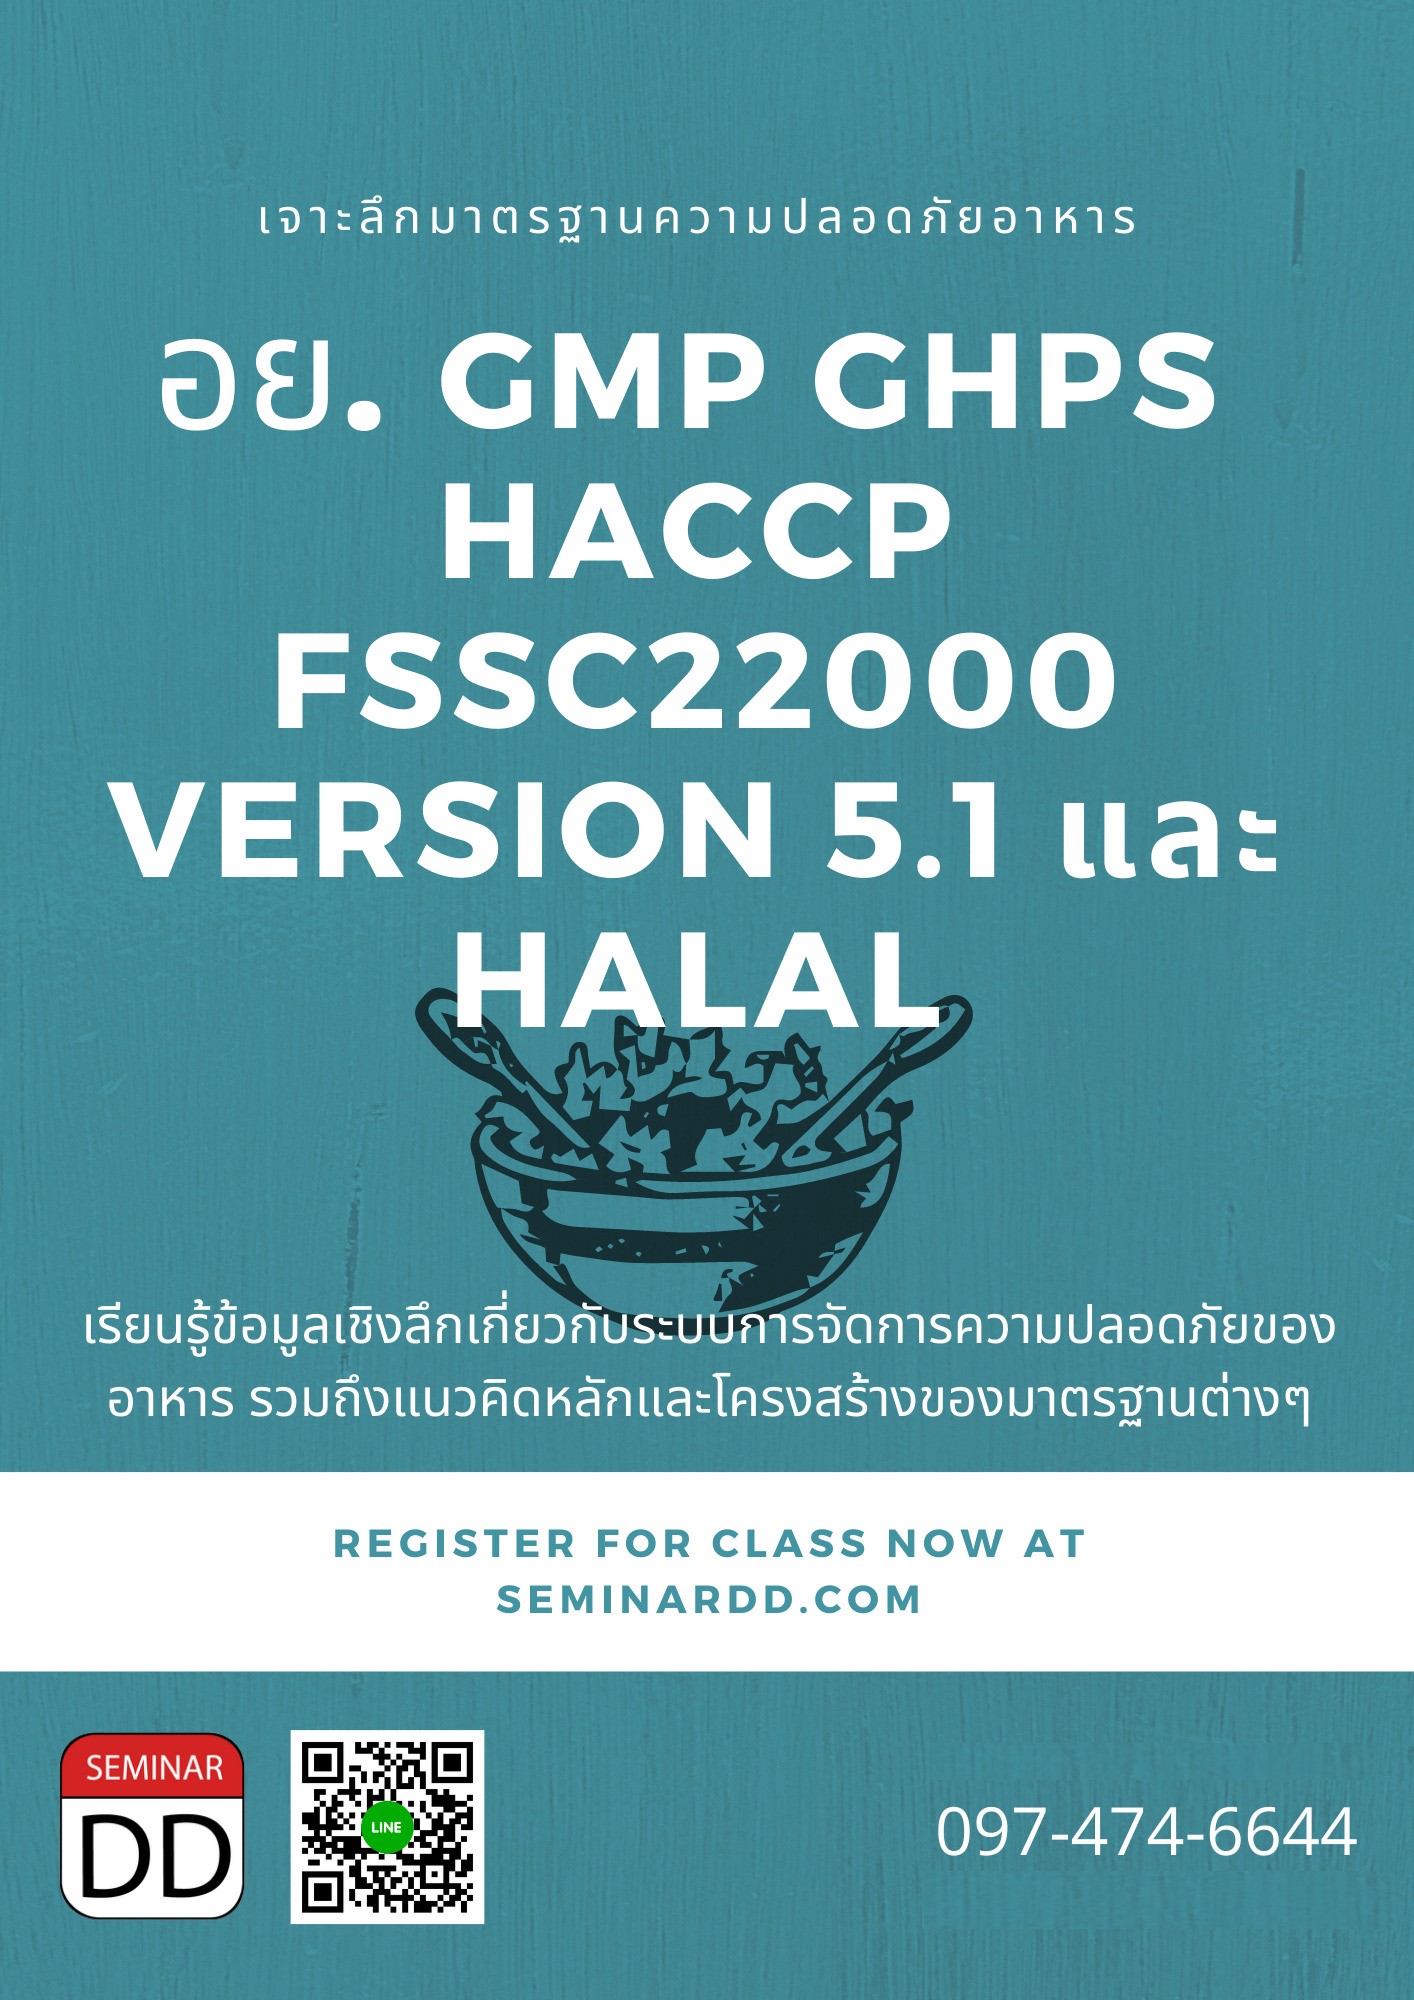 หลักสูตร เจาะลึกมาตรฐานความปลอดภัยอาหาร อย. GMP GHPs HACCP FSSC22000 Version 5.1 และ Halal